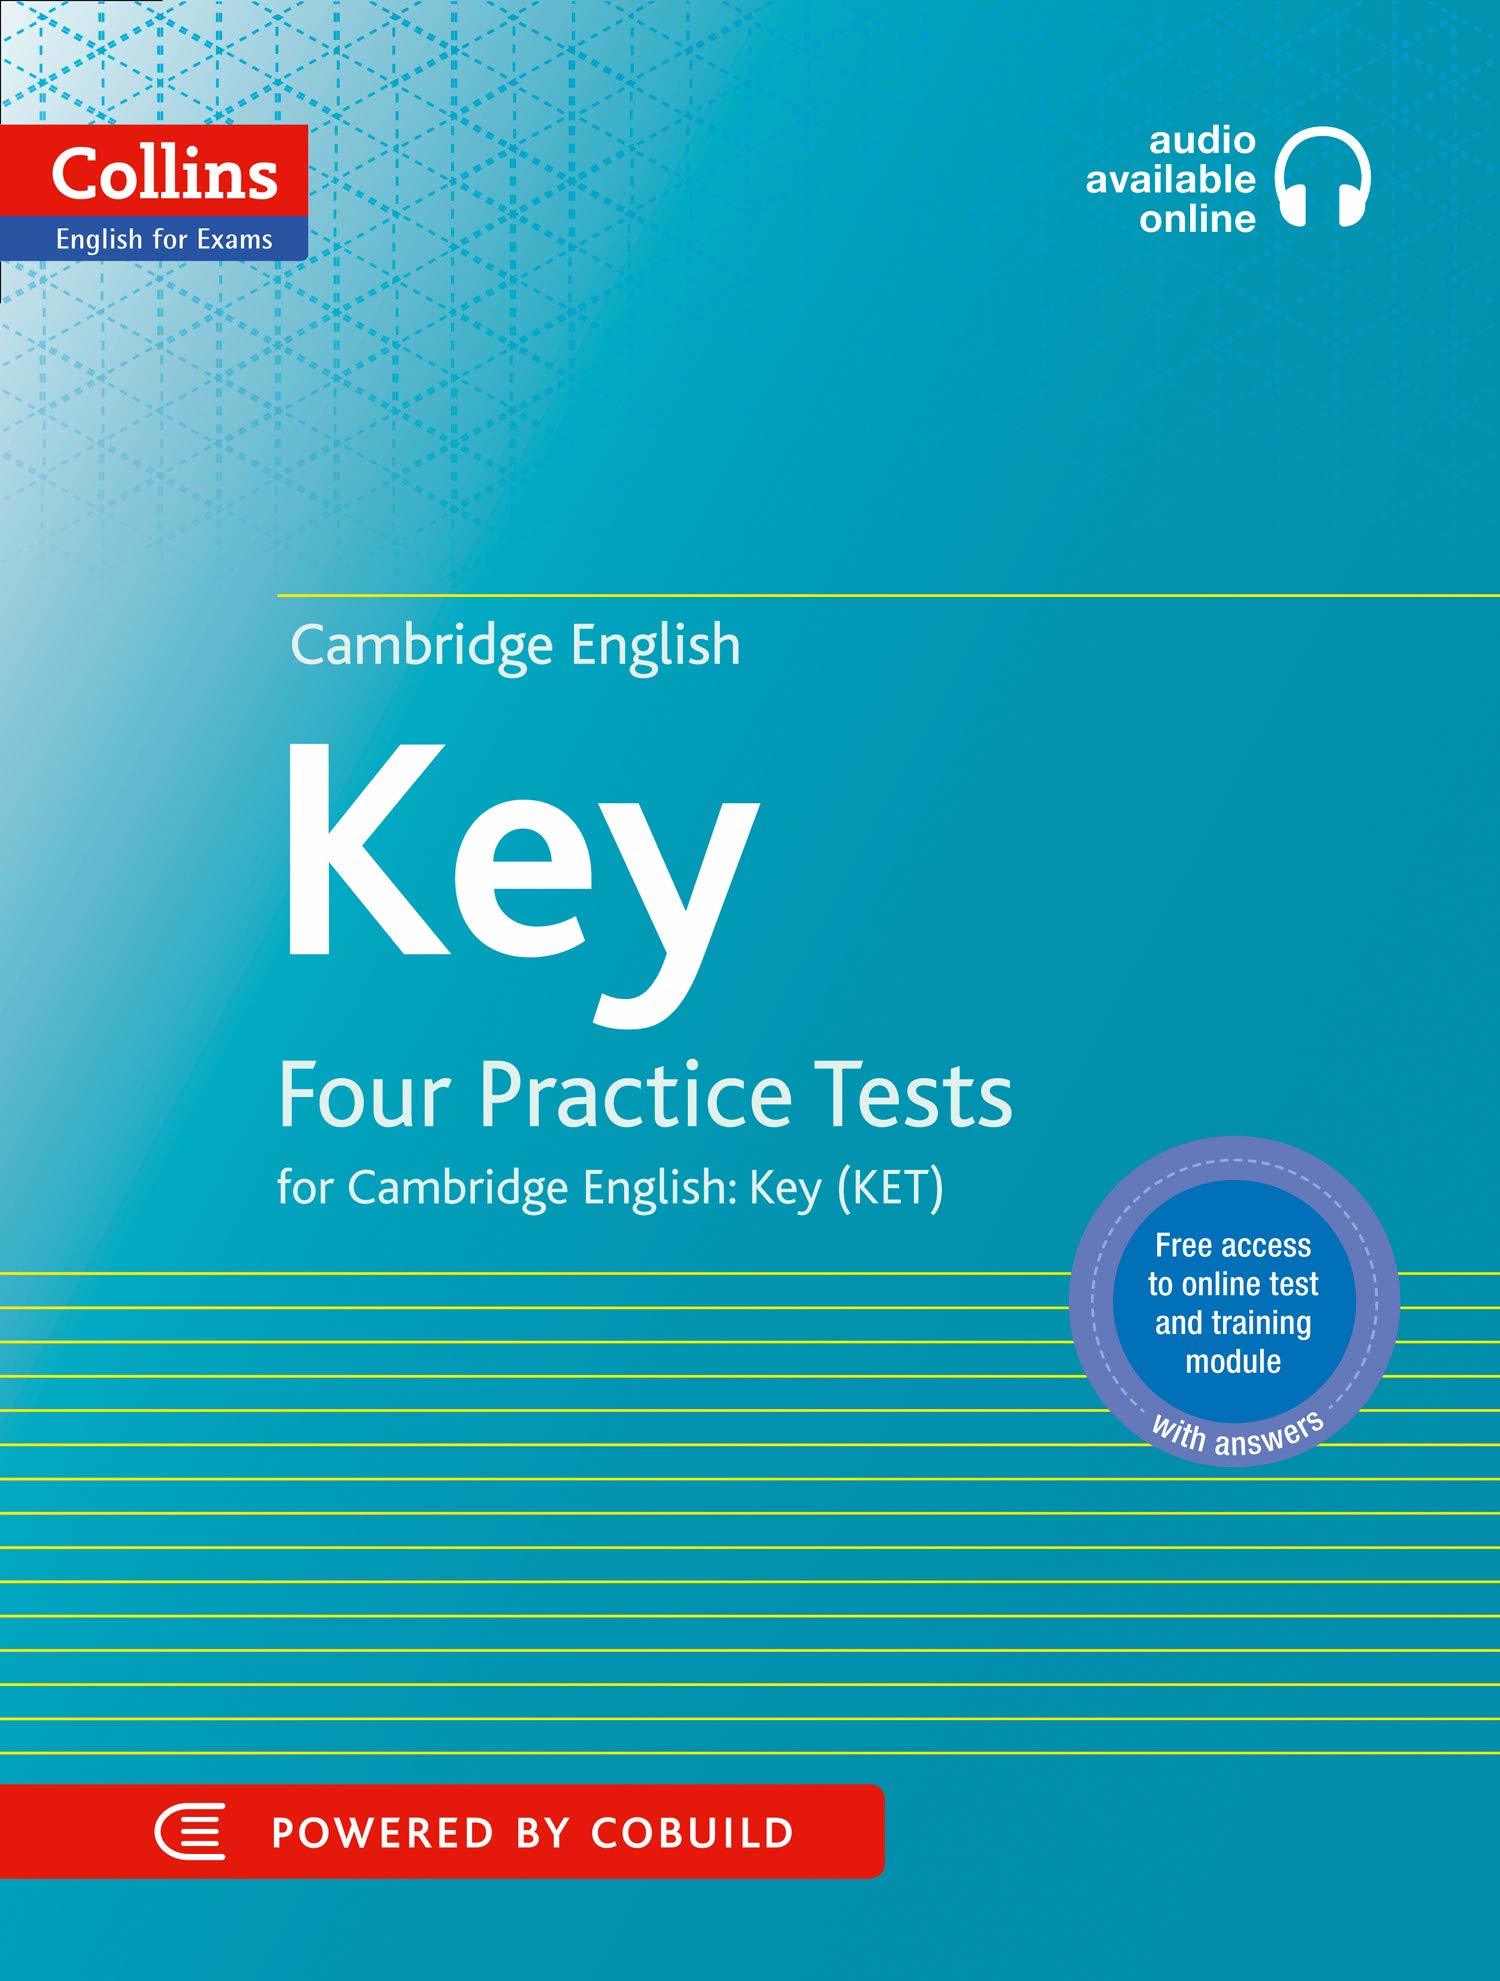 English test book. Ket Practice Tests. Ket Exam Practice Tests. Key Cambridge. Ket Cambridge.